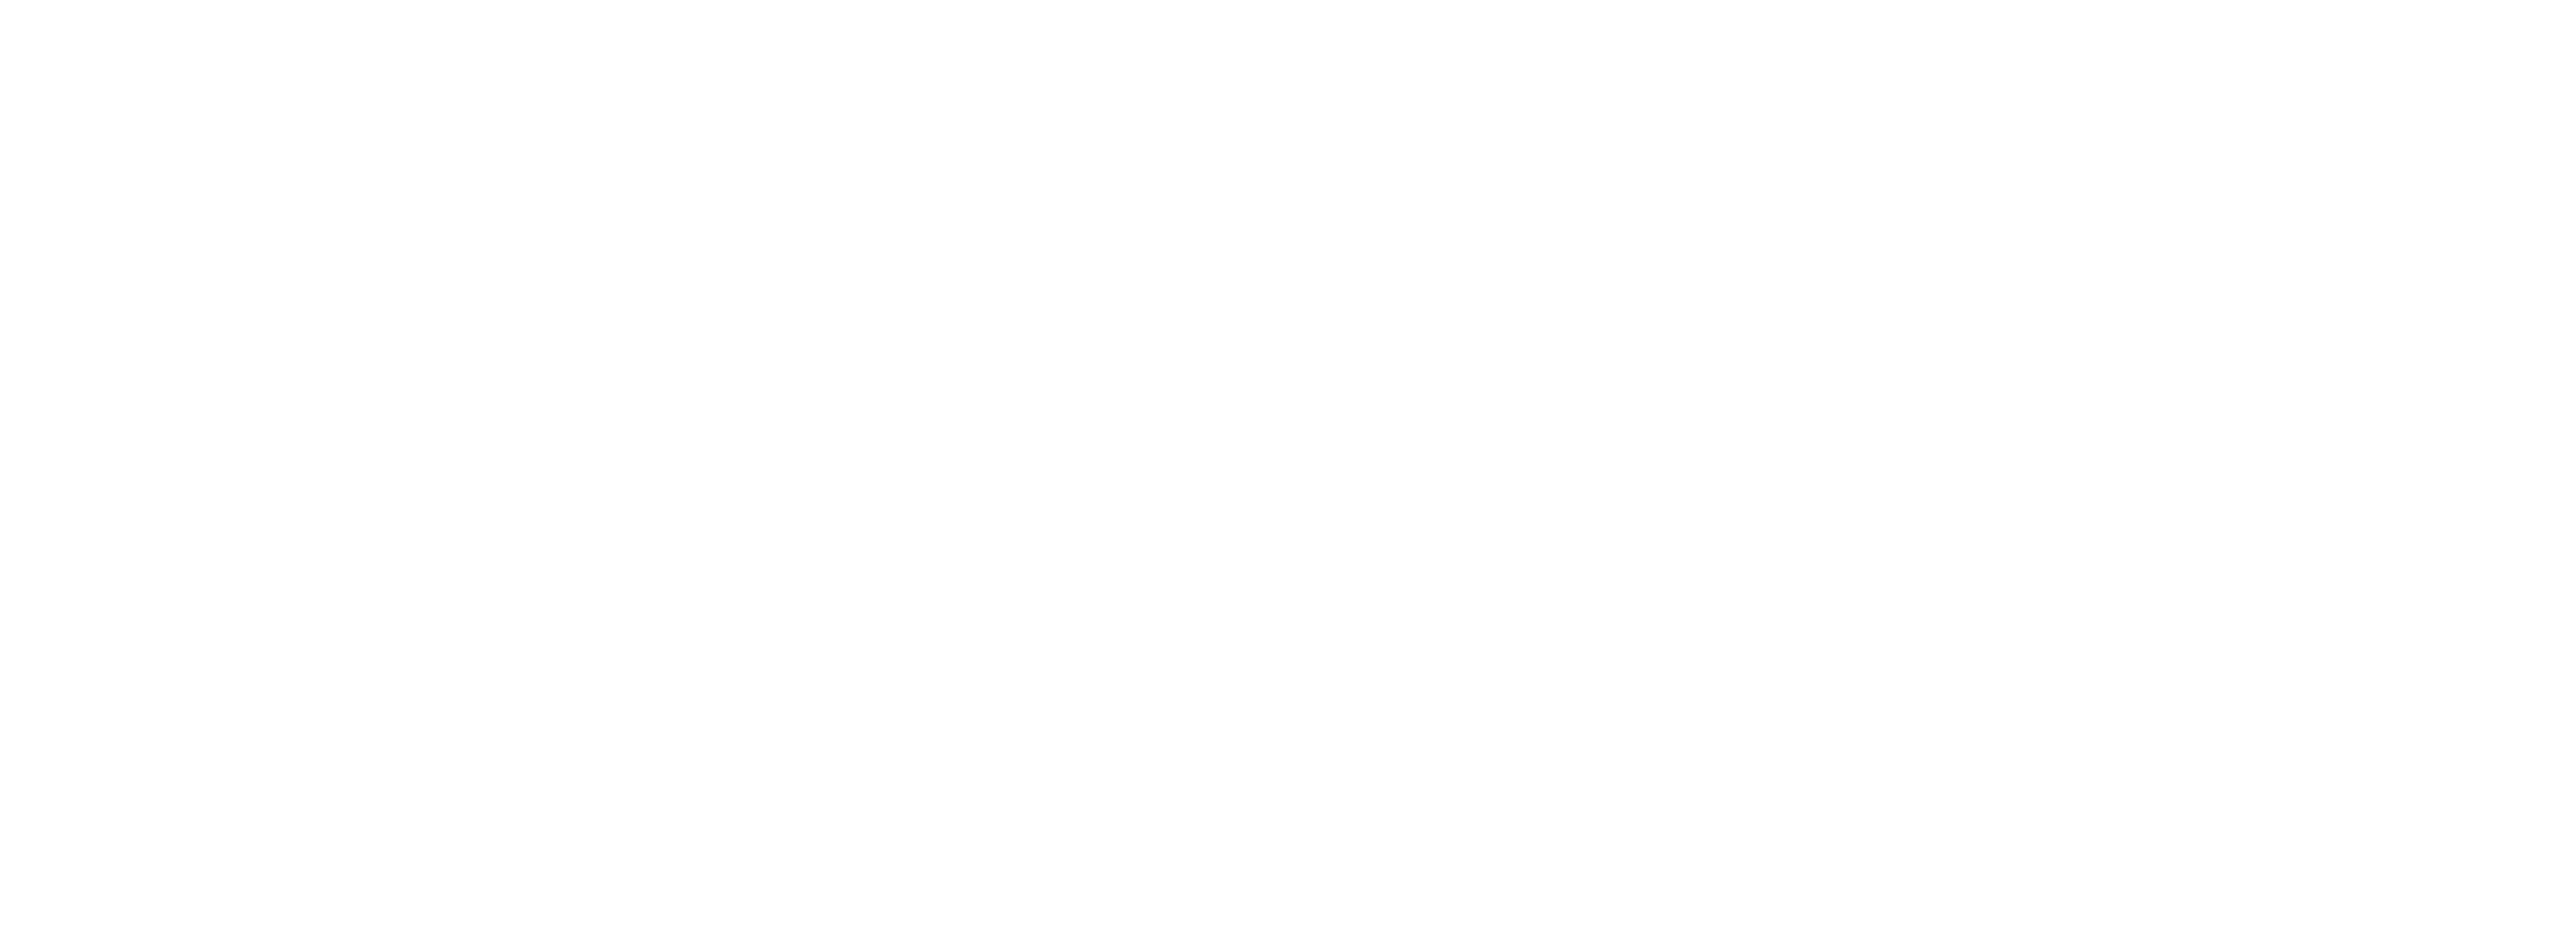 //www.leogoode.com/wp-content/uploads/2020/04/LeoGoode_Header_Text.png